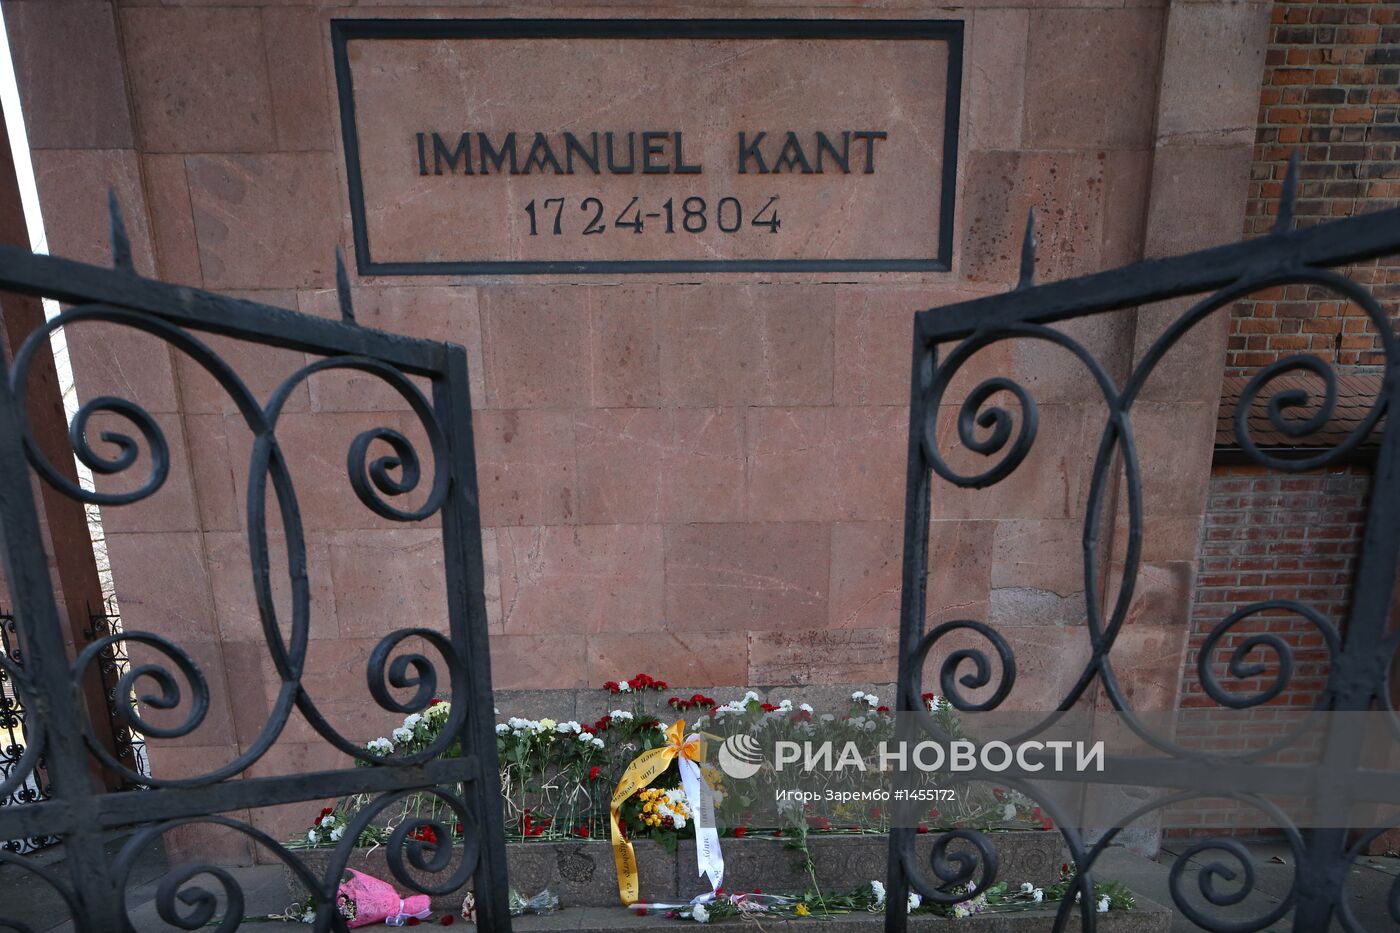 Празднование дня рождения Иммануила Канта в Калининграде